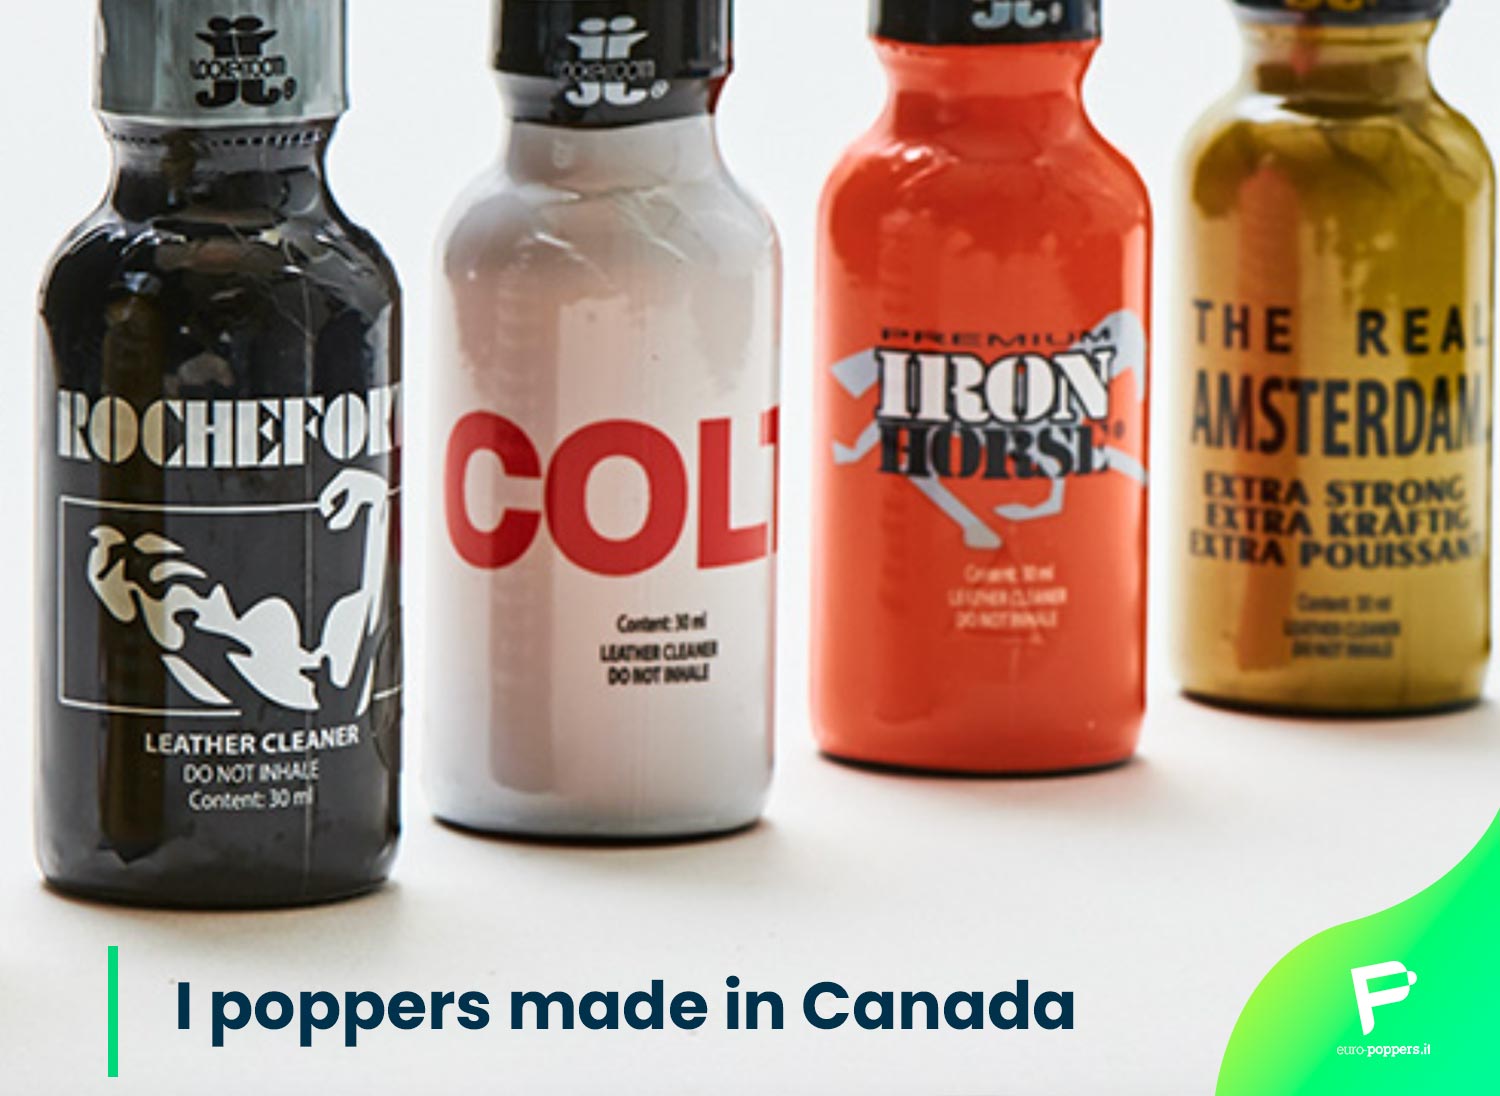 Al momento stai visualizzando I poppers made in Canada